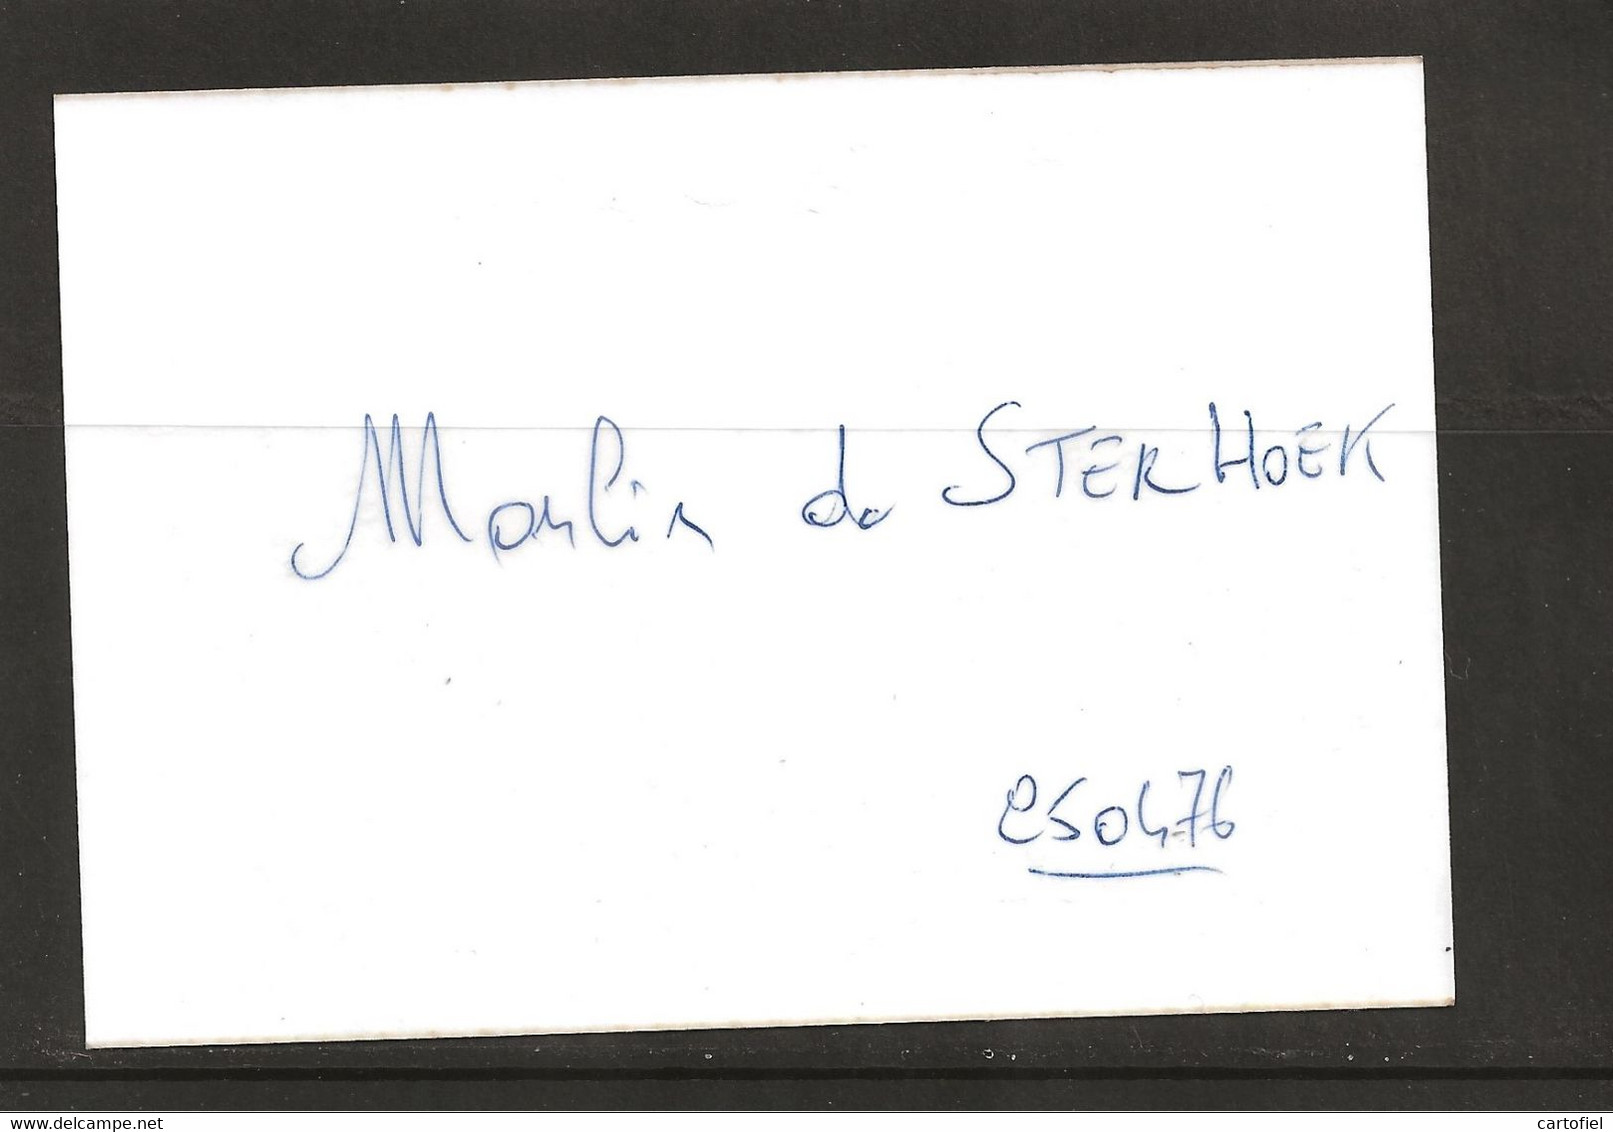 STERHOEK-FOTO-ORIGINAL-MOLEN-WINDMOLEN-MOULIN A VENT-DATEE 07.09.1978-AFMETINGEN+-9-12.5CM-UNIEK-ZIE DE 2 SCANS - Anzegem